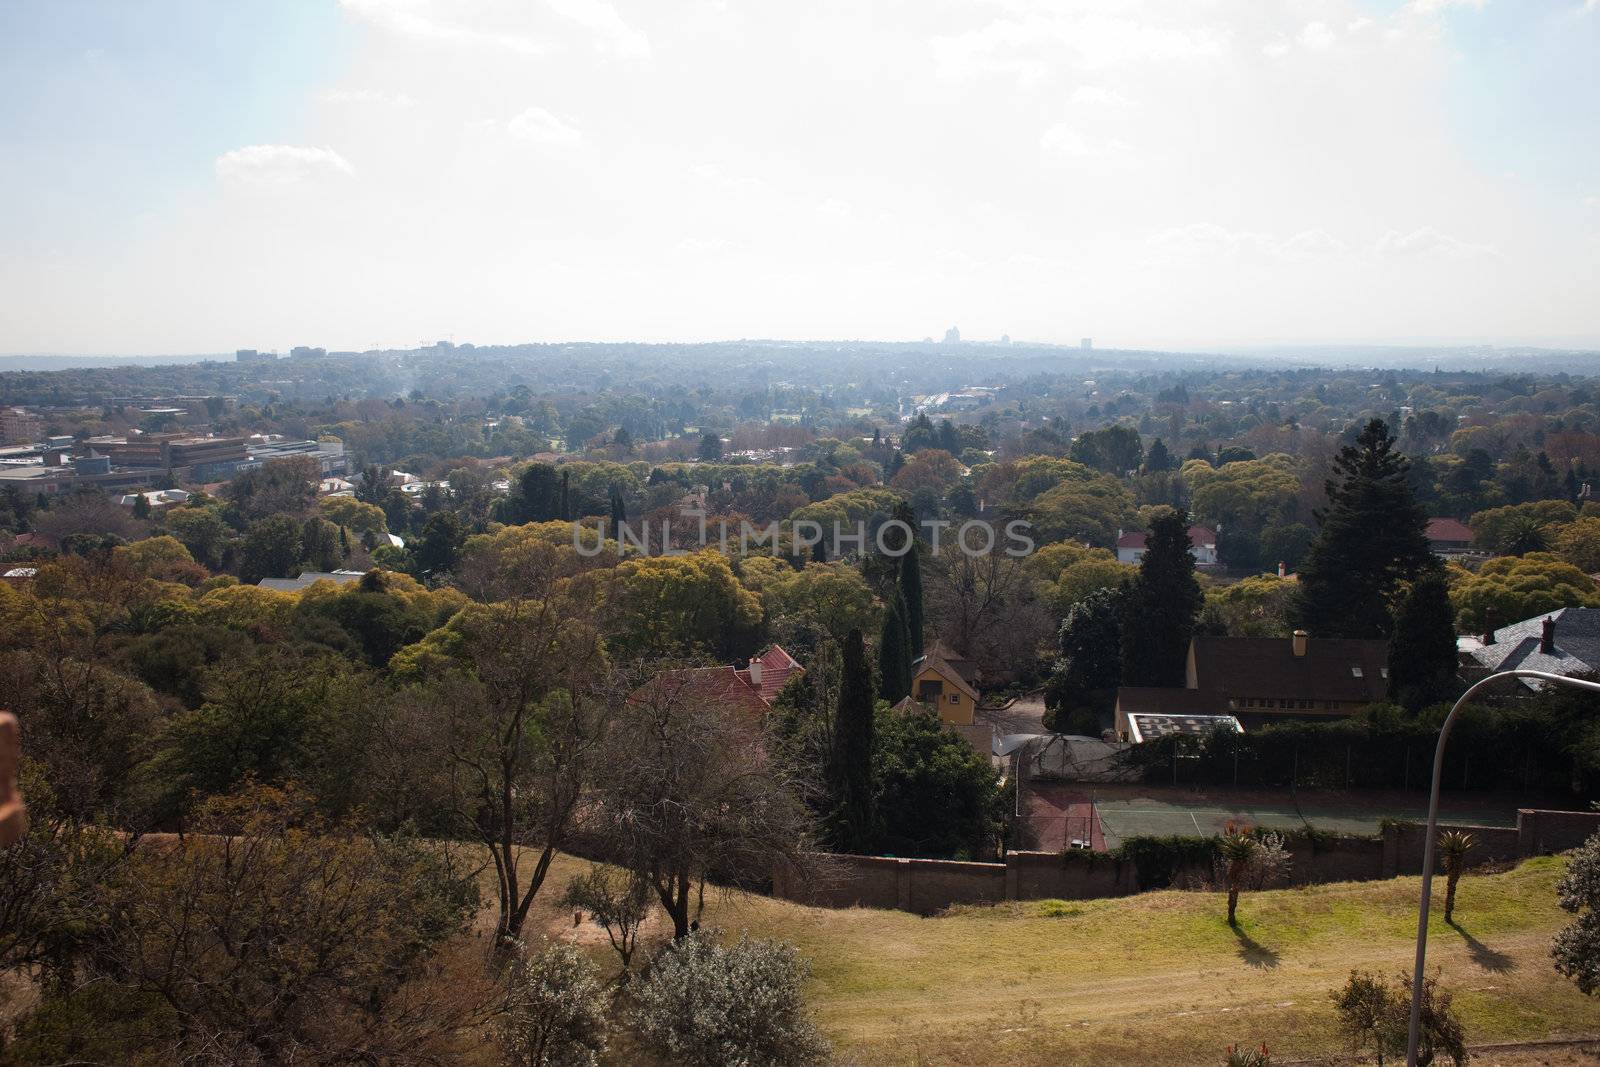 Johannesburg suburb by edan